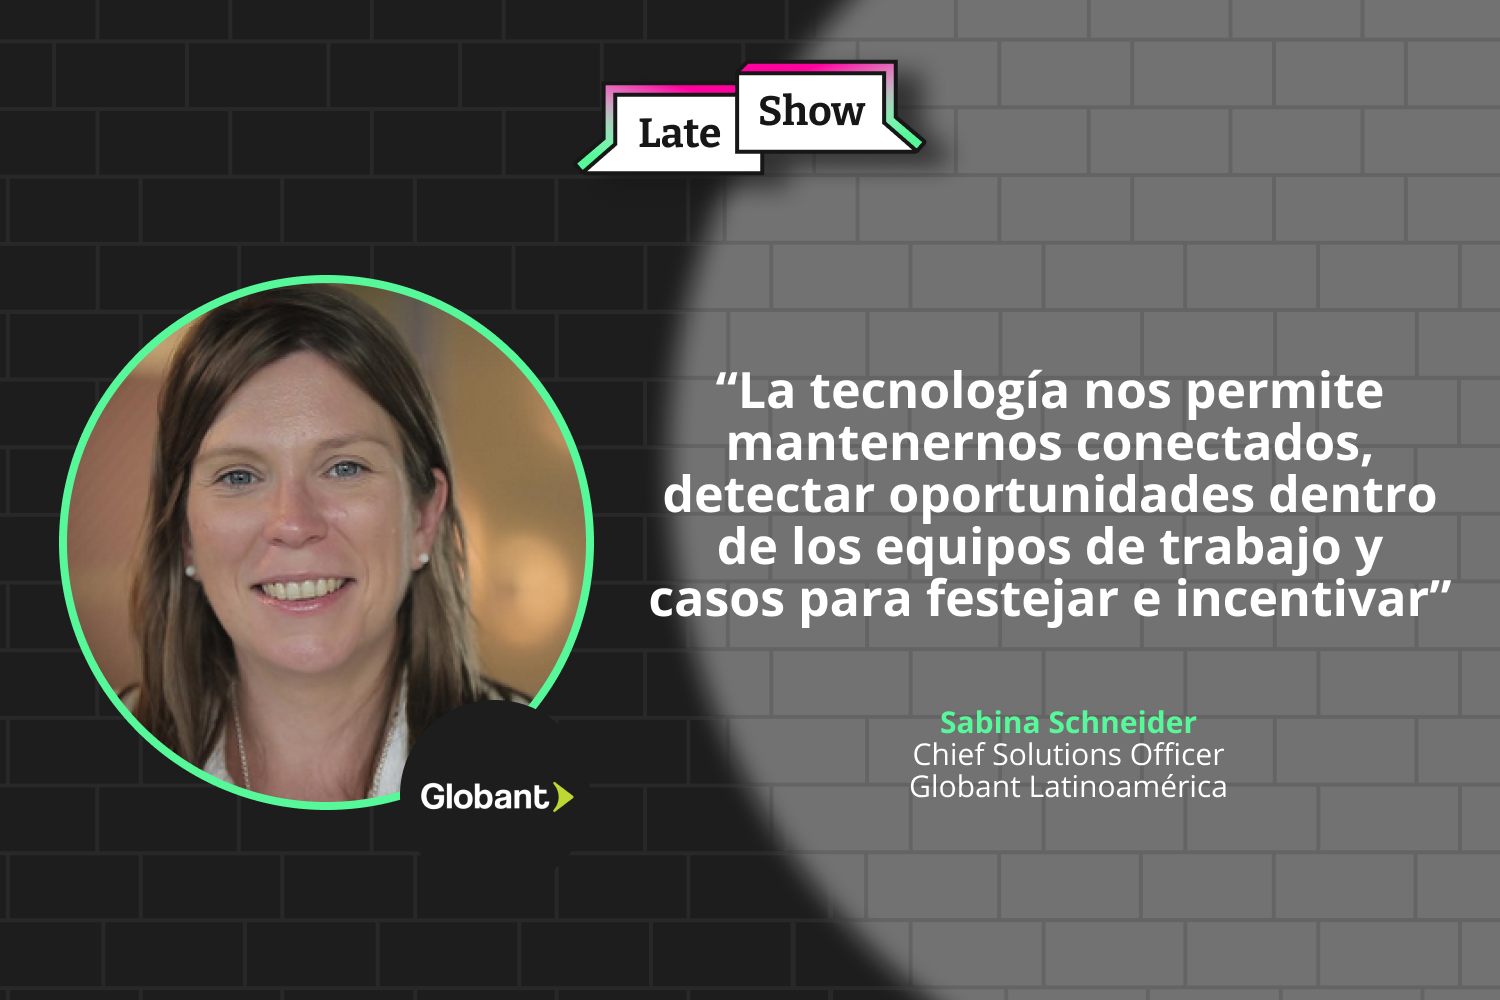 Junto a Sabina Schneider, Chief Solutions Officer para Globant Latinoamérica, conoce lo que se viene en tecnología para las empresas de la región.